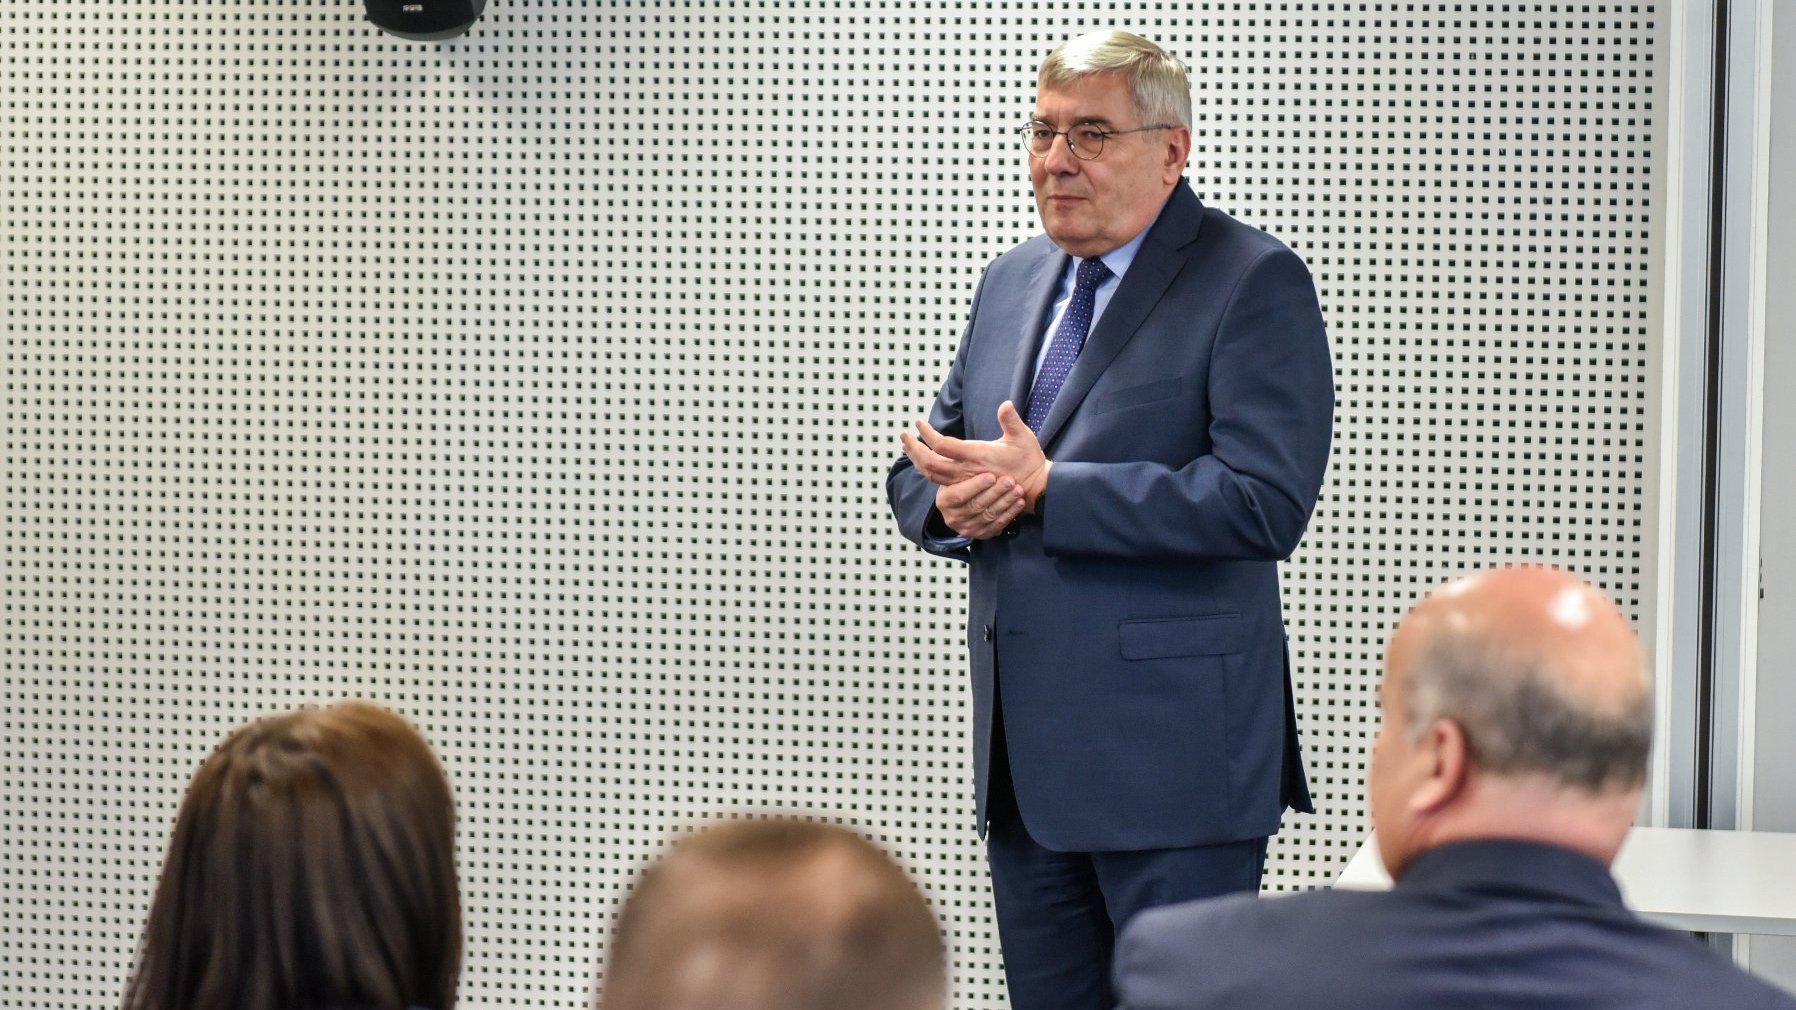 Zdjęcie przedstawia mężczyznę w garniturze przemawiającego w sali konferencyjnej